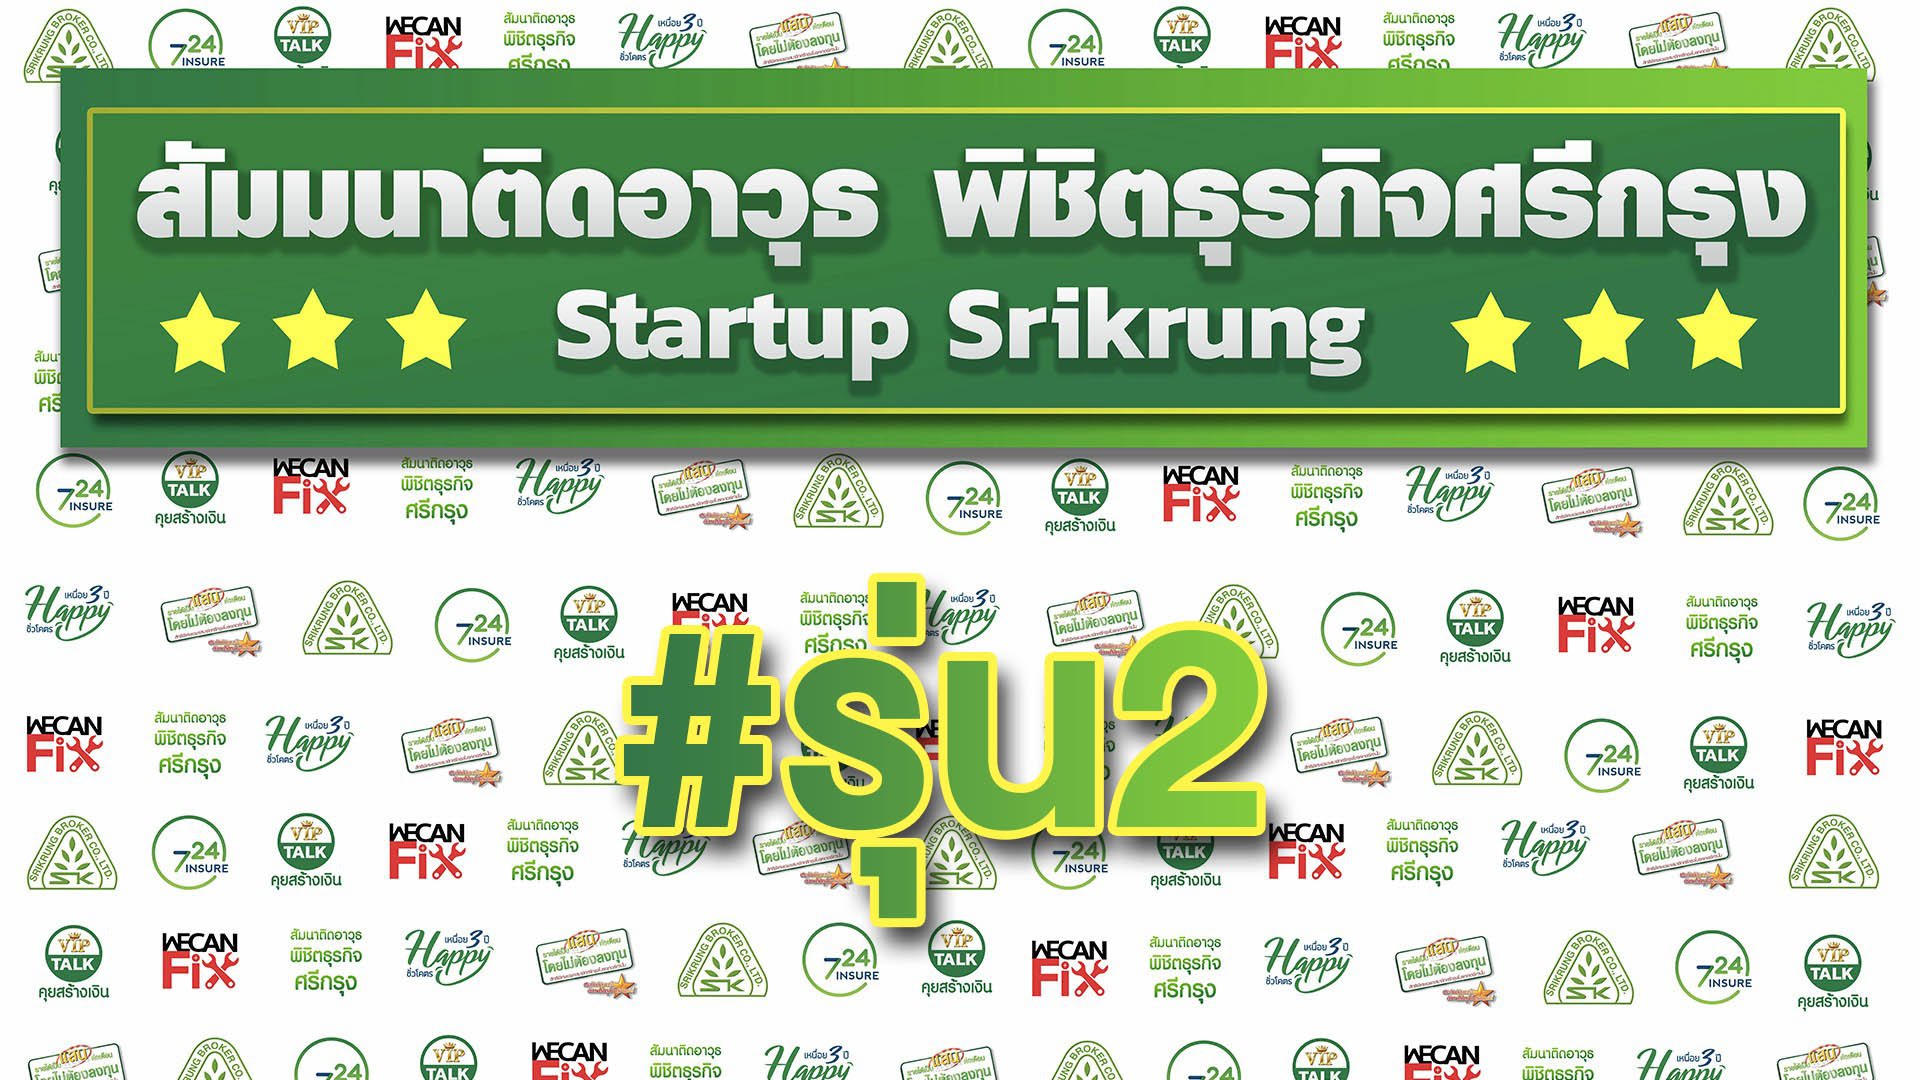 สัมมนาติดอาวุธพิชิตธุรกิจศรีกรุง รุ่น 2 " Startup Srikrung "